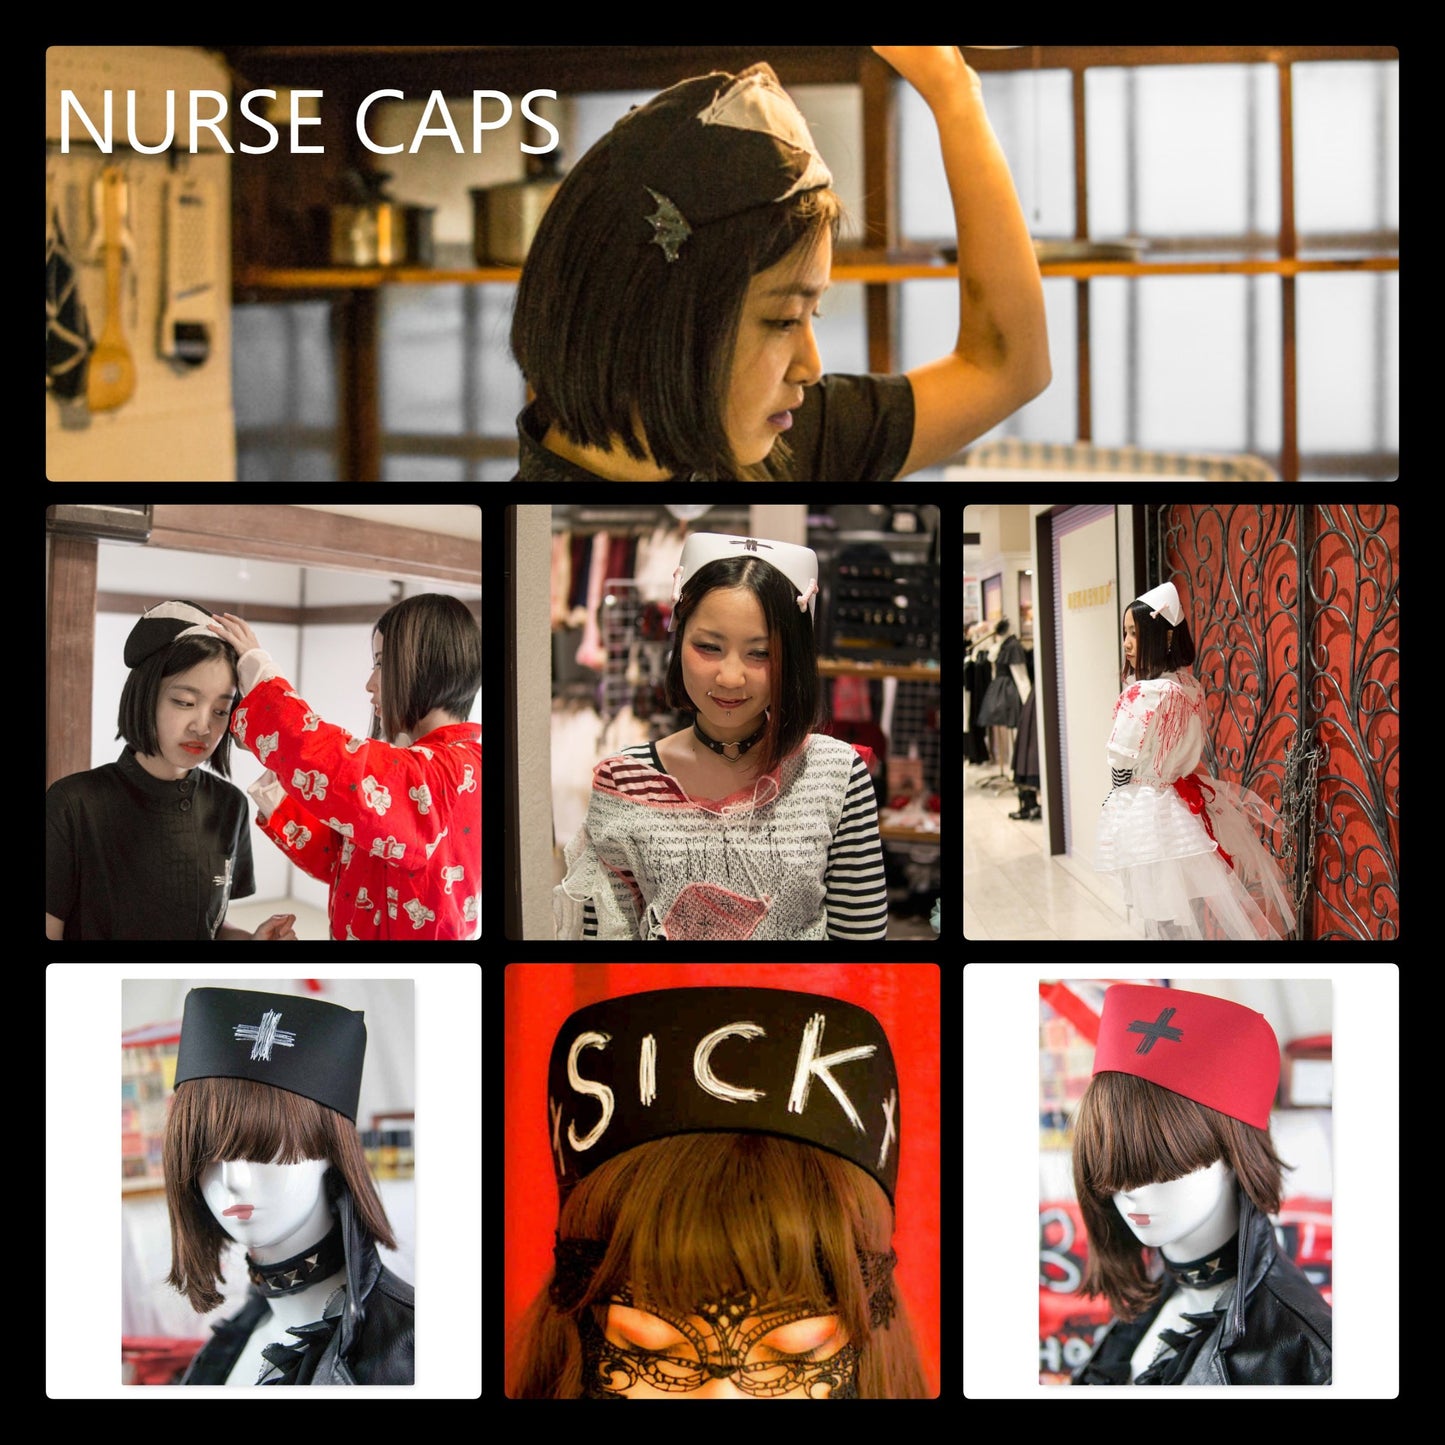 Krankenschwester Mütze